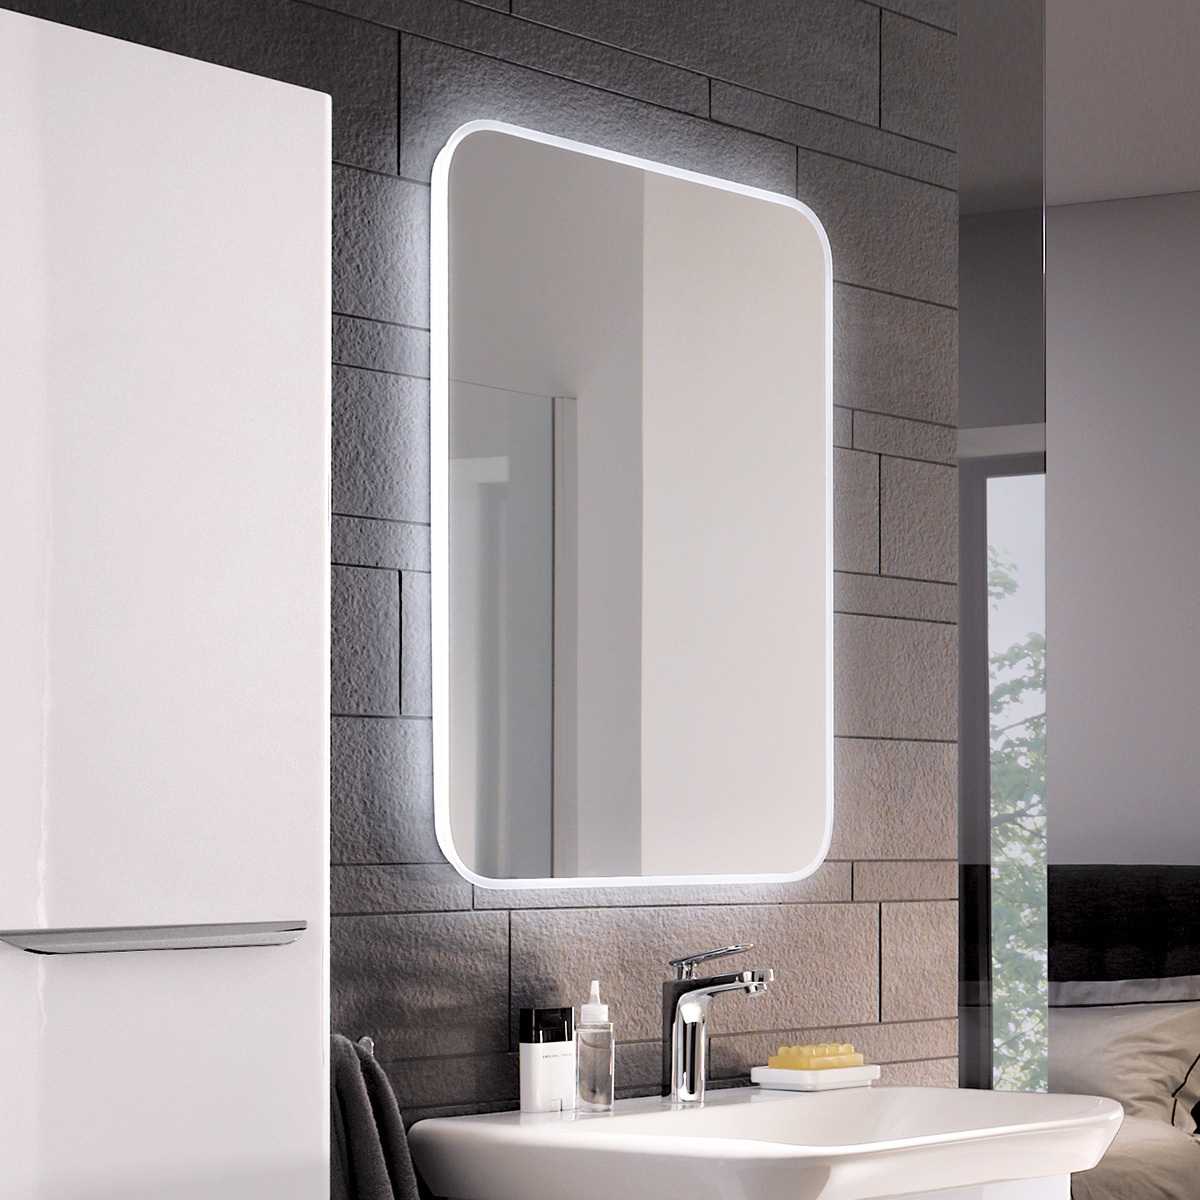 Подсветка для зеркала в ванной: светильник с выключателем, класс защиты и расположение